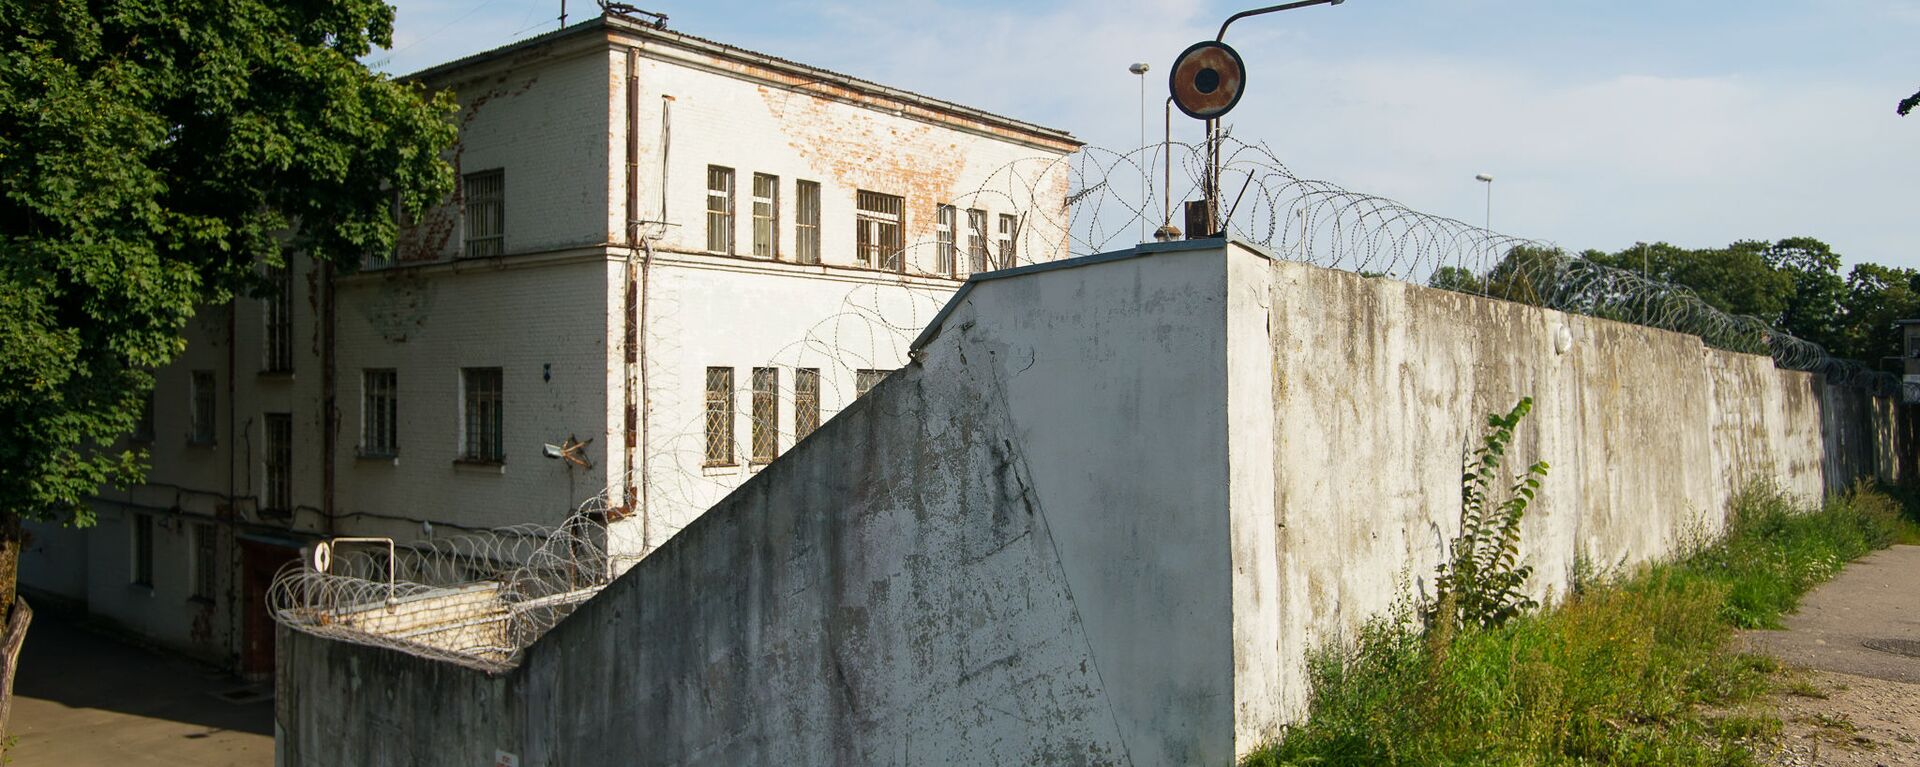 Даугавпилсская тюрьма, в просторечии - Белый лебедь - Sputnik Латвия, 1920, 25.03.2021